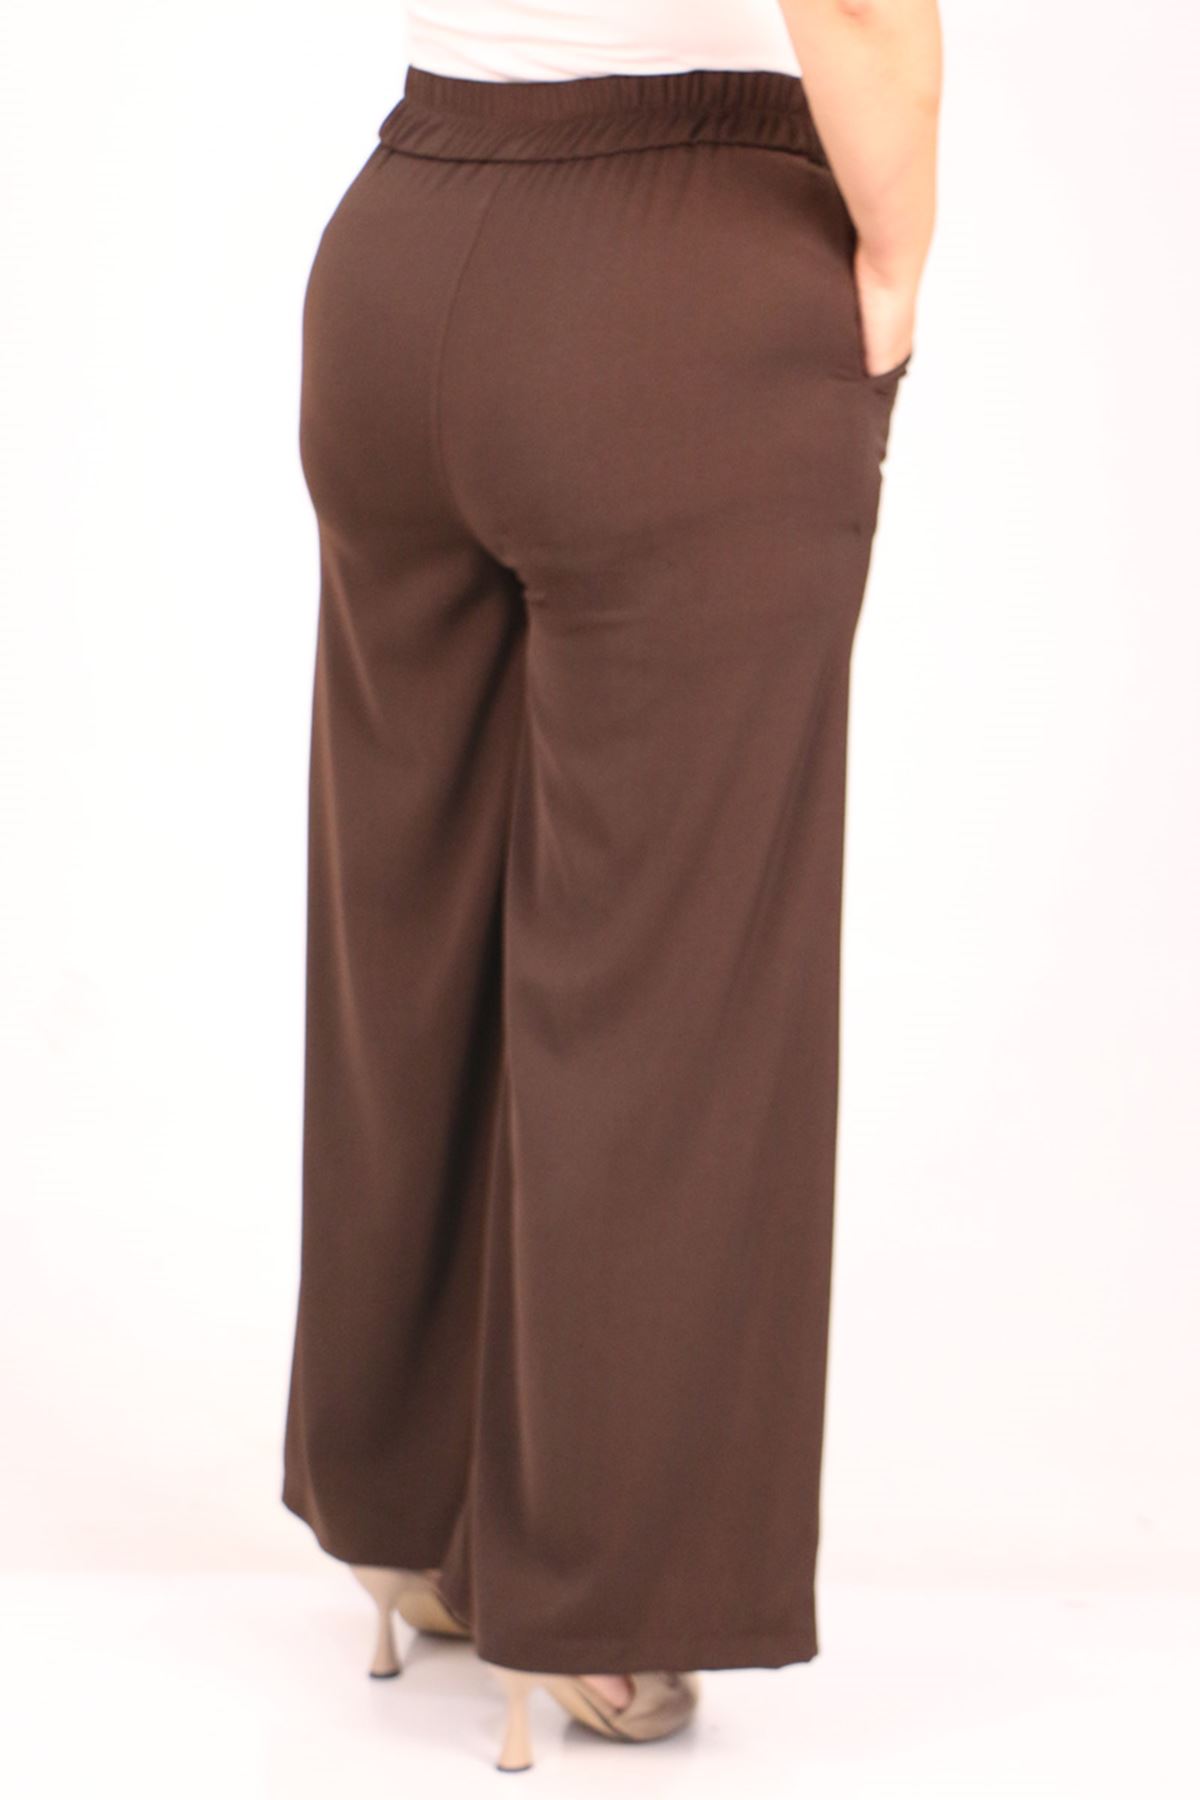 39037 Plus Size Aspen Elastic Waist Trousers - Brown